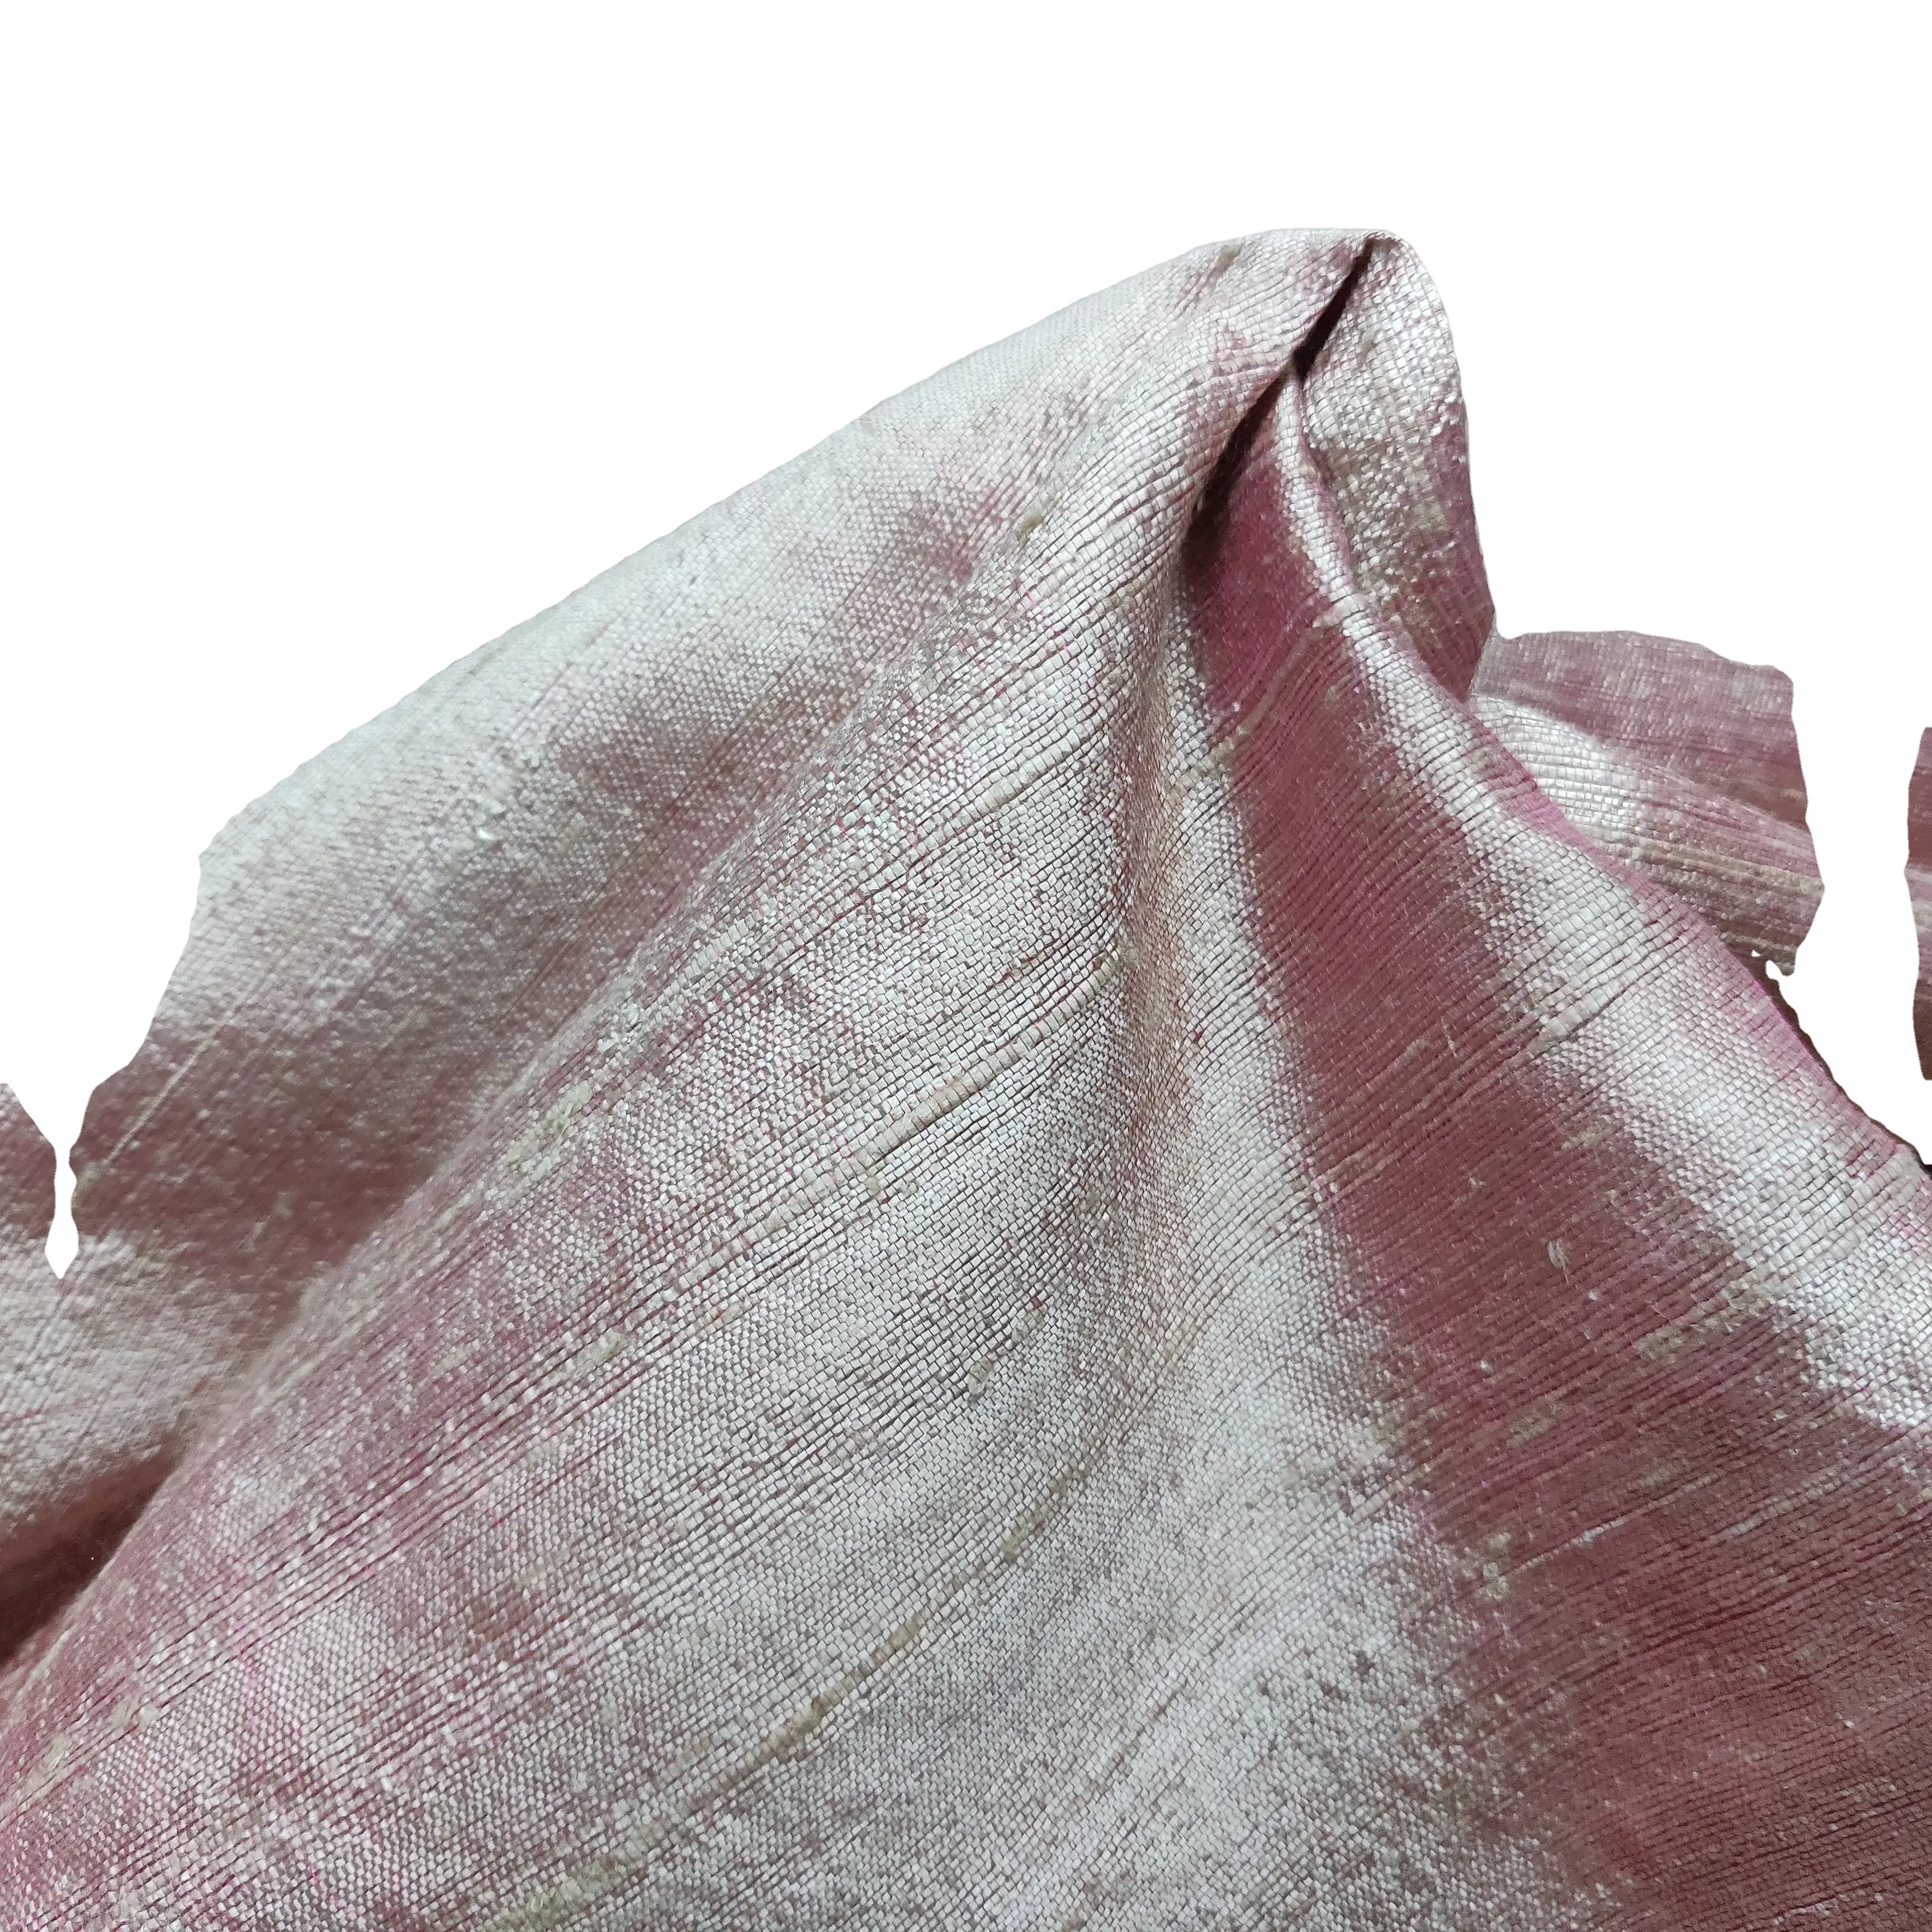 Tissu en soie Handloom Tissu Handloom sur mesure Textile tissé uni Personnalisé écologique et durable pour la décoration intérieure